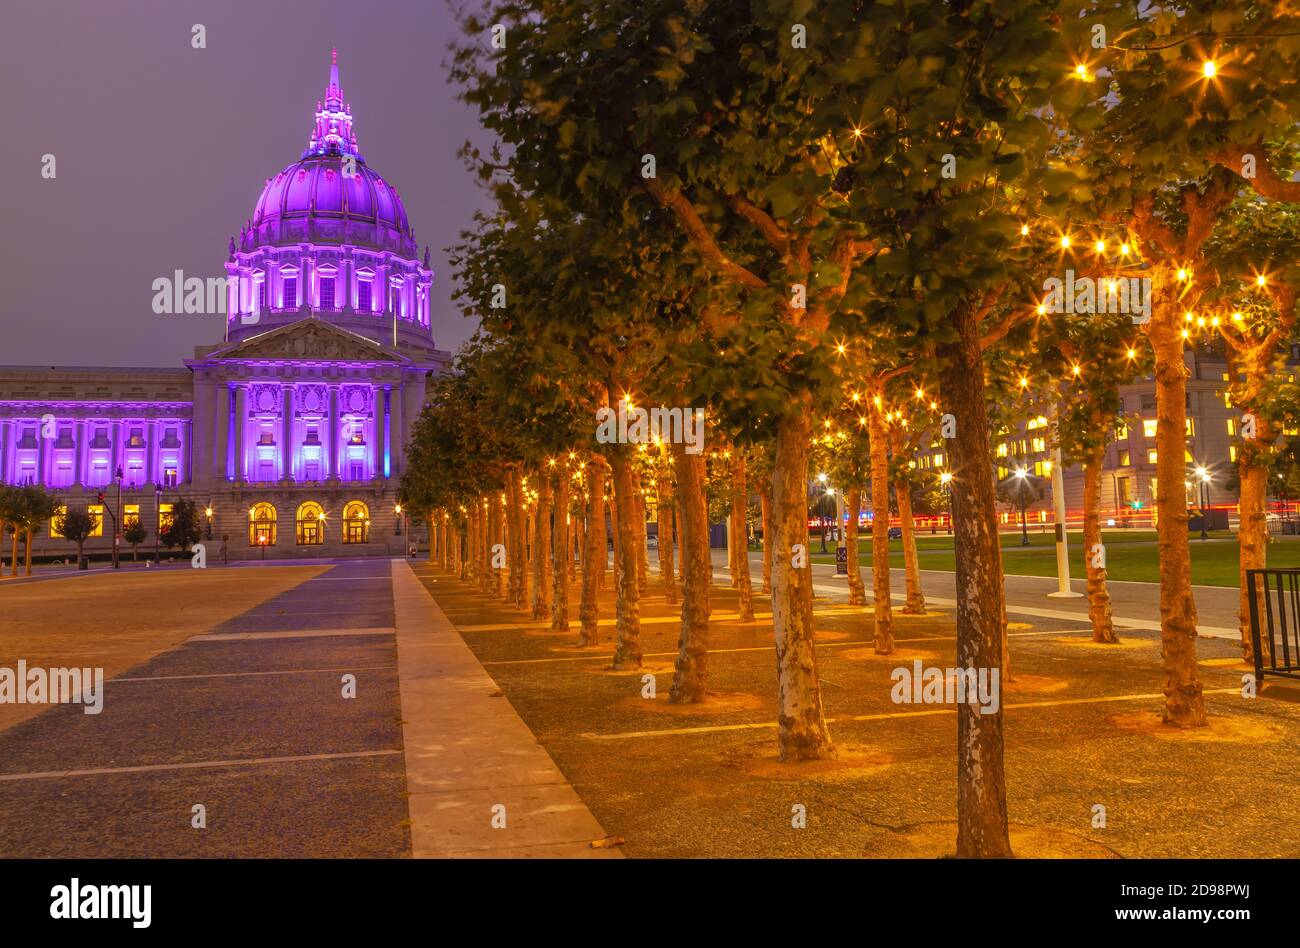 Il municipio di San Francisco si illumina in viola per onorare l'industria dell'ospitalità del paese, California, USA. Foto Stock